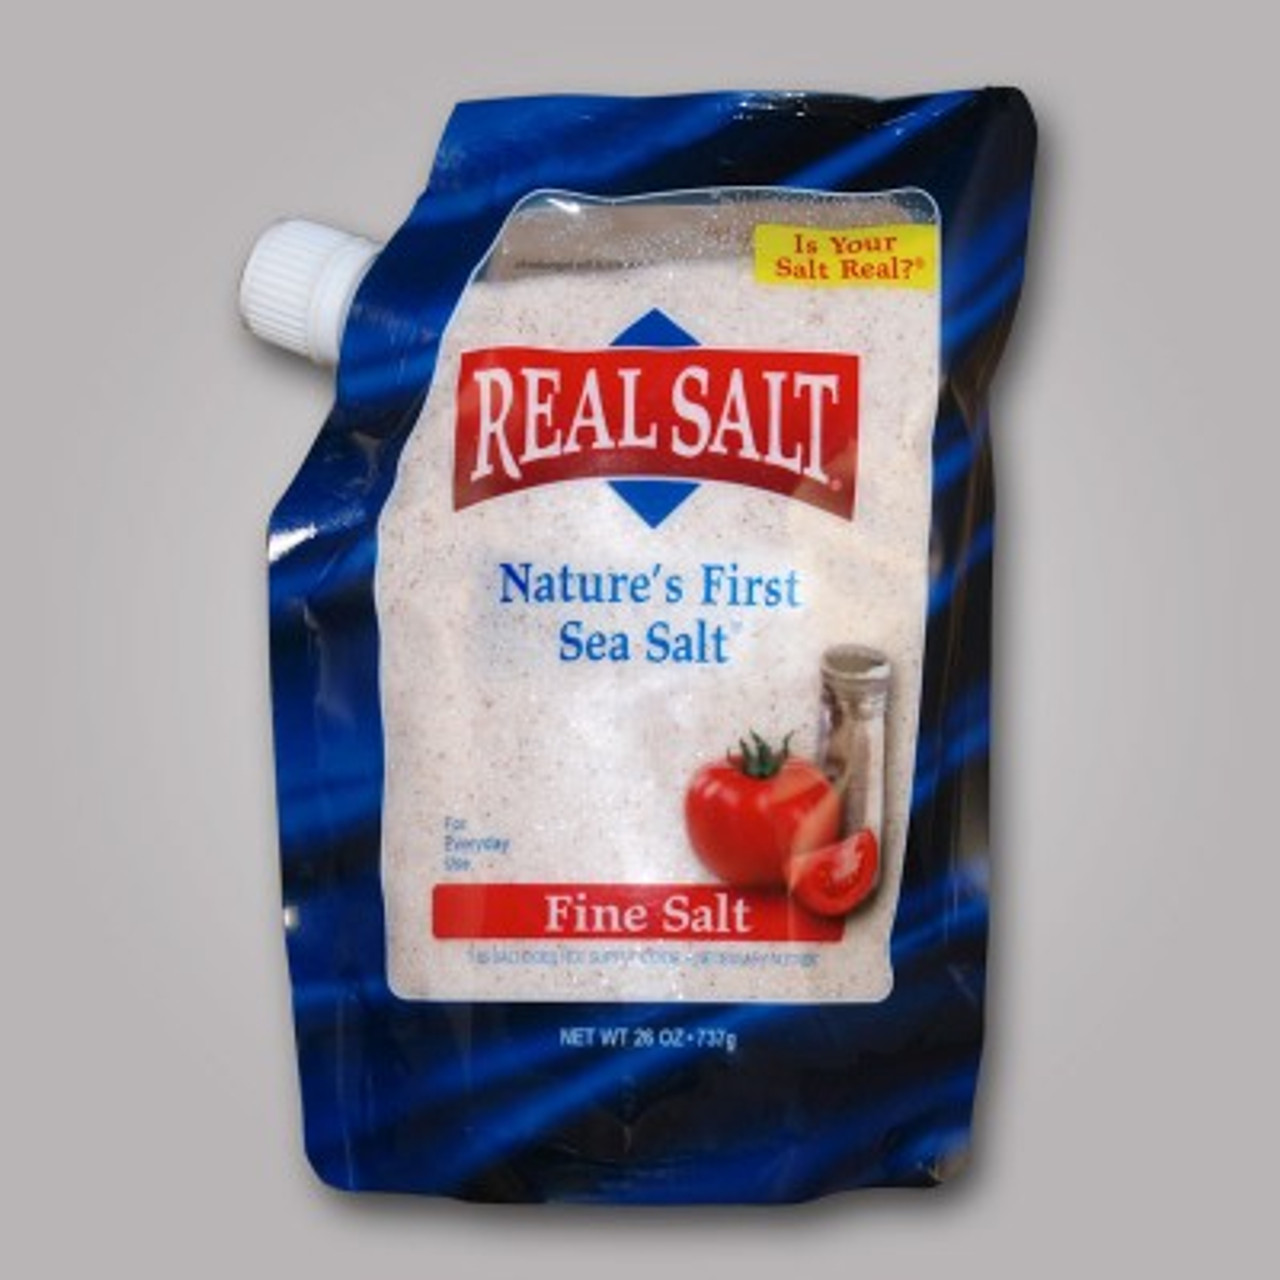 Real Salt Organic Season Salt - 8.25 oz jar